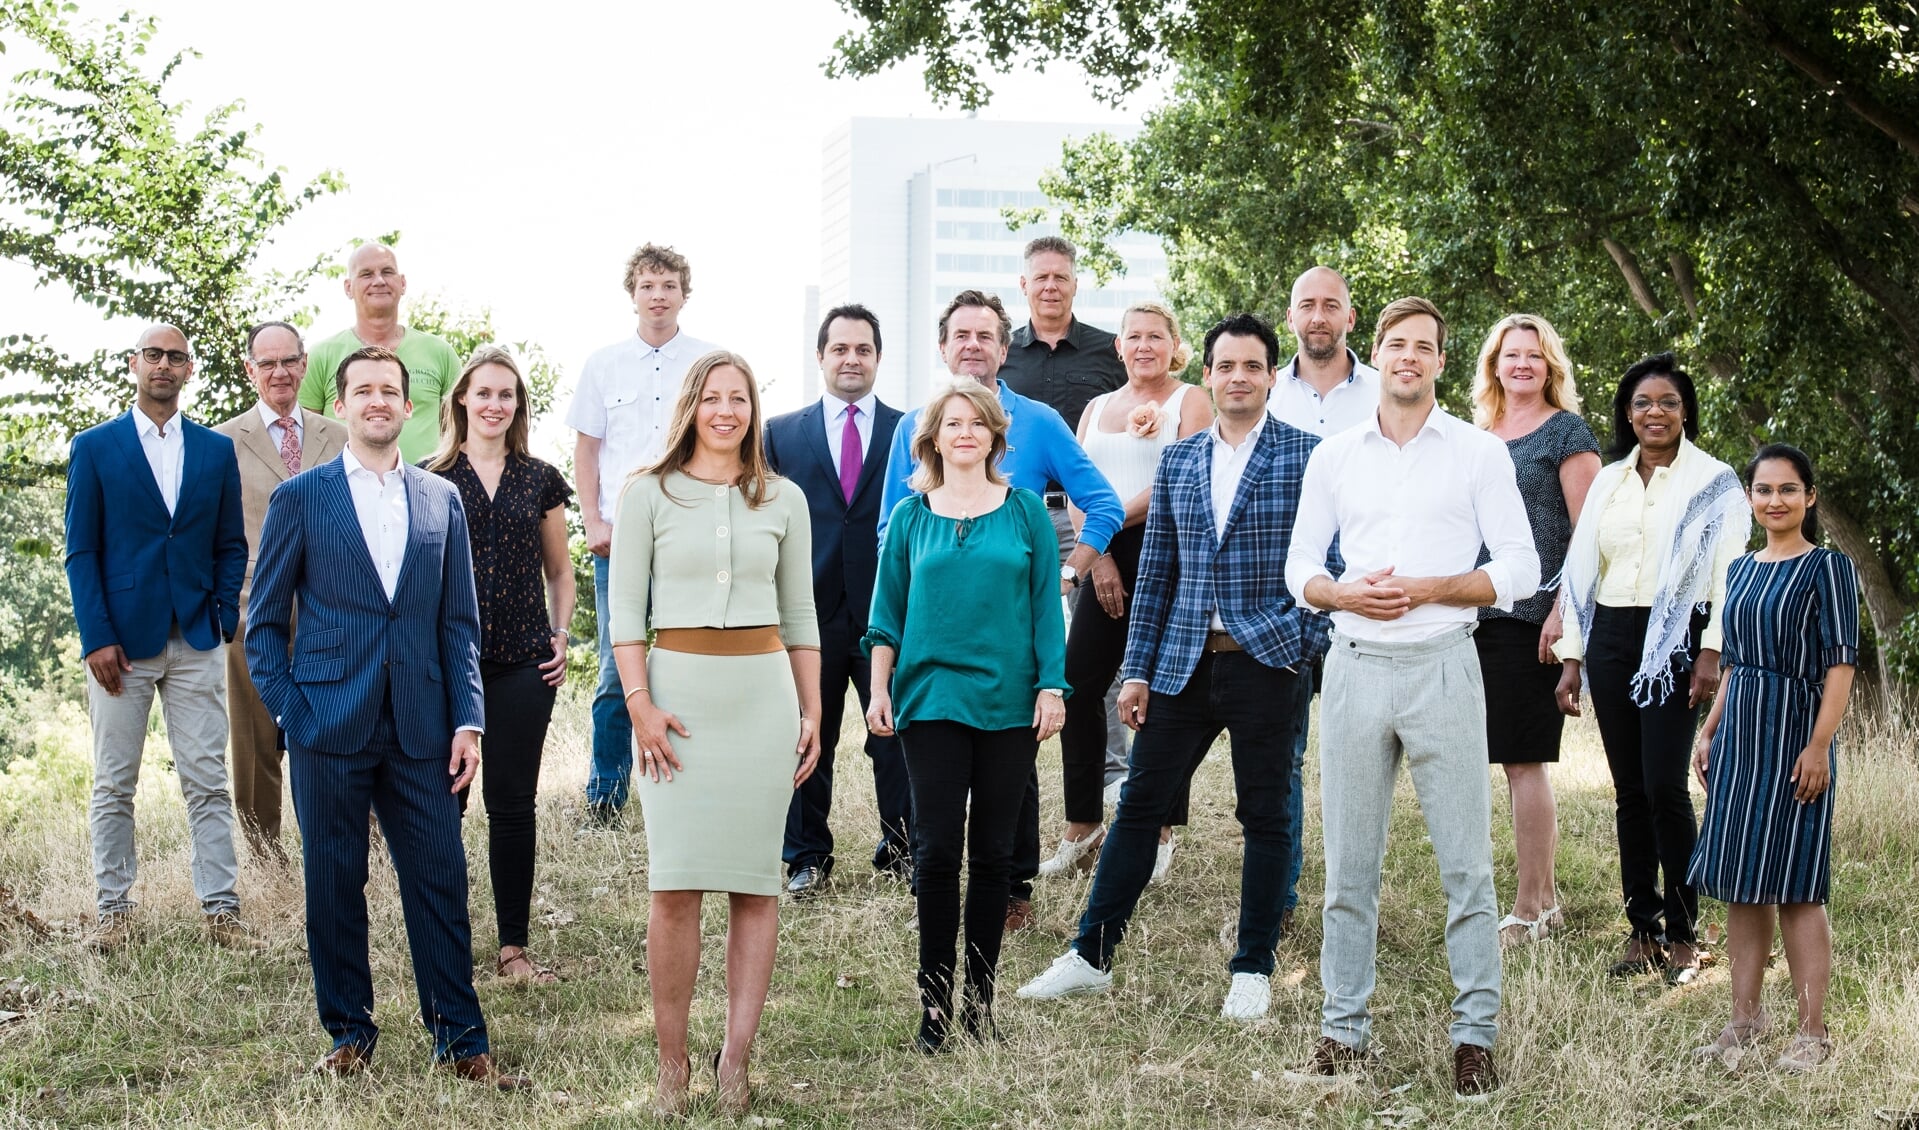 Het team van de VVD.